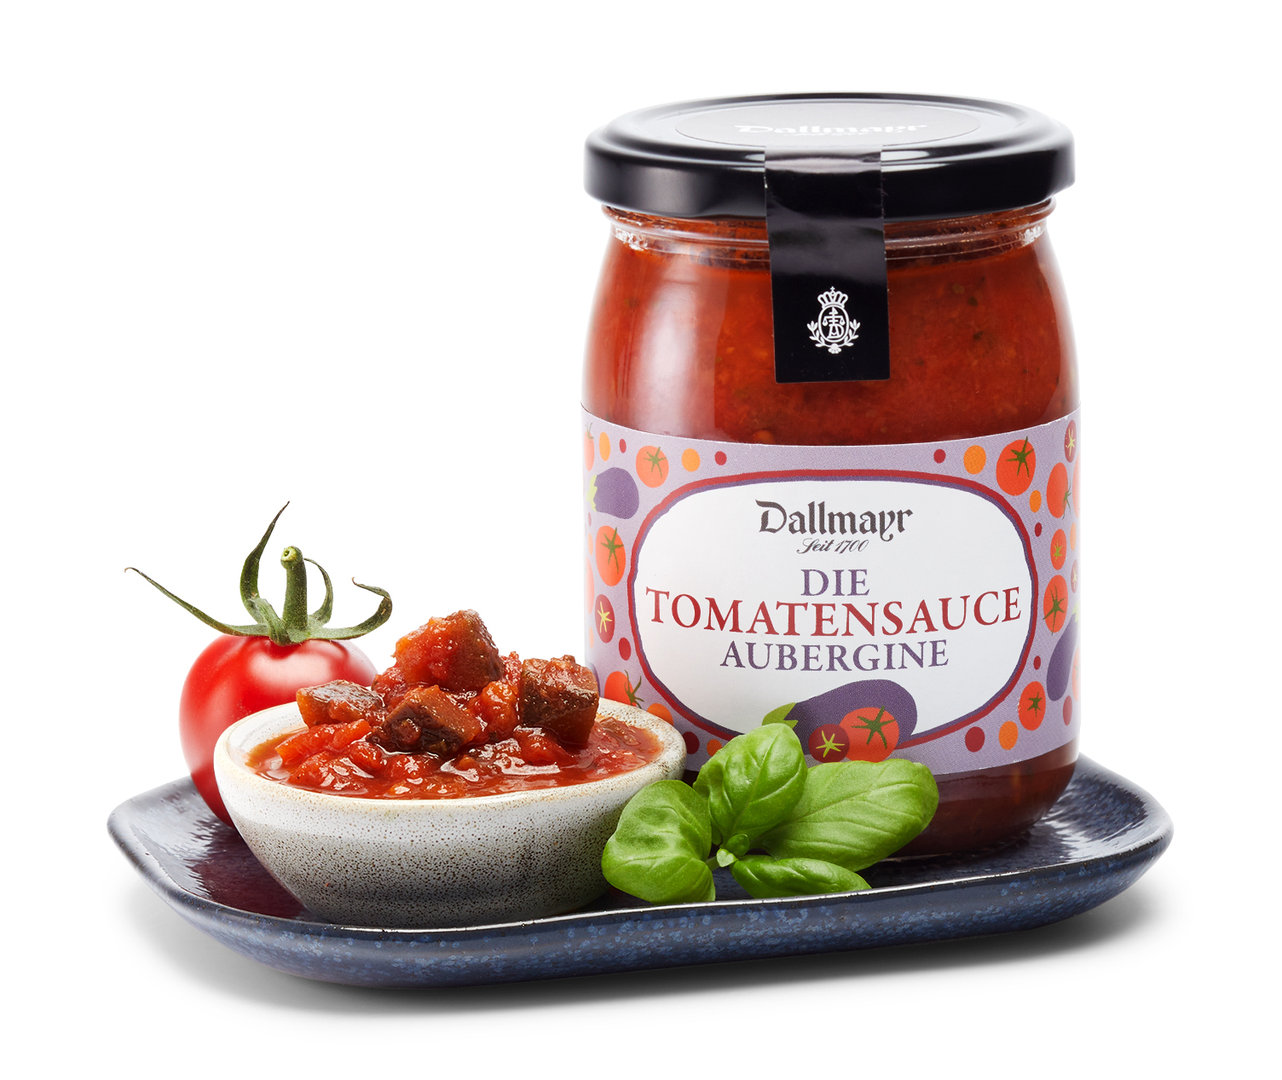 Die Tomatensauce mit Auberginen Dallmayr